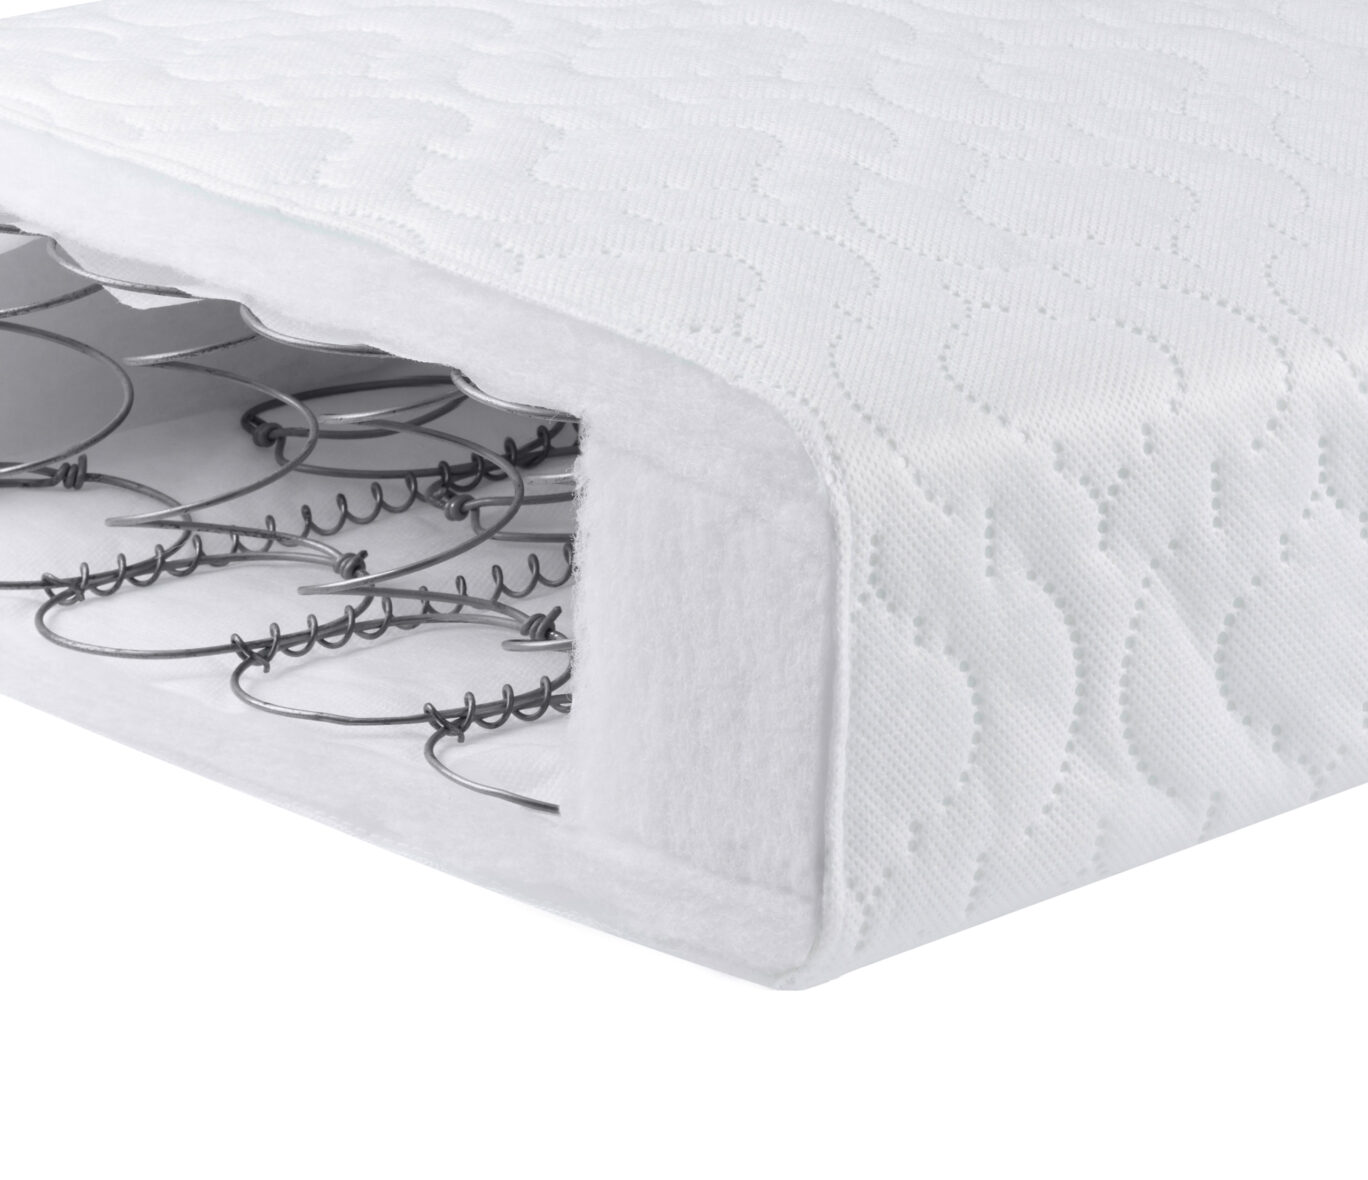 Deluxe Sprung Cot Bed Mattress – 140 x 70 cm